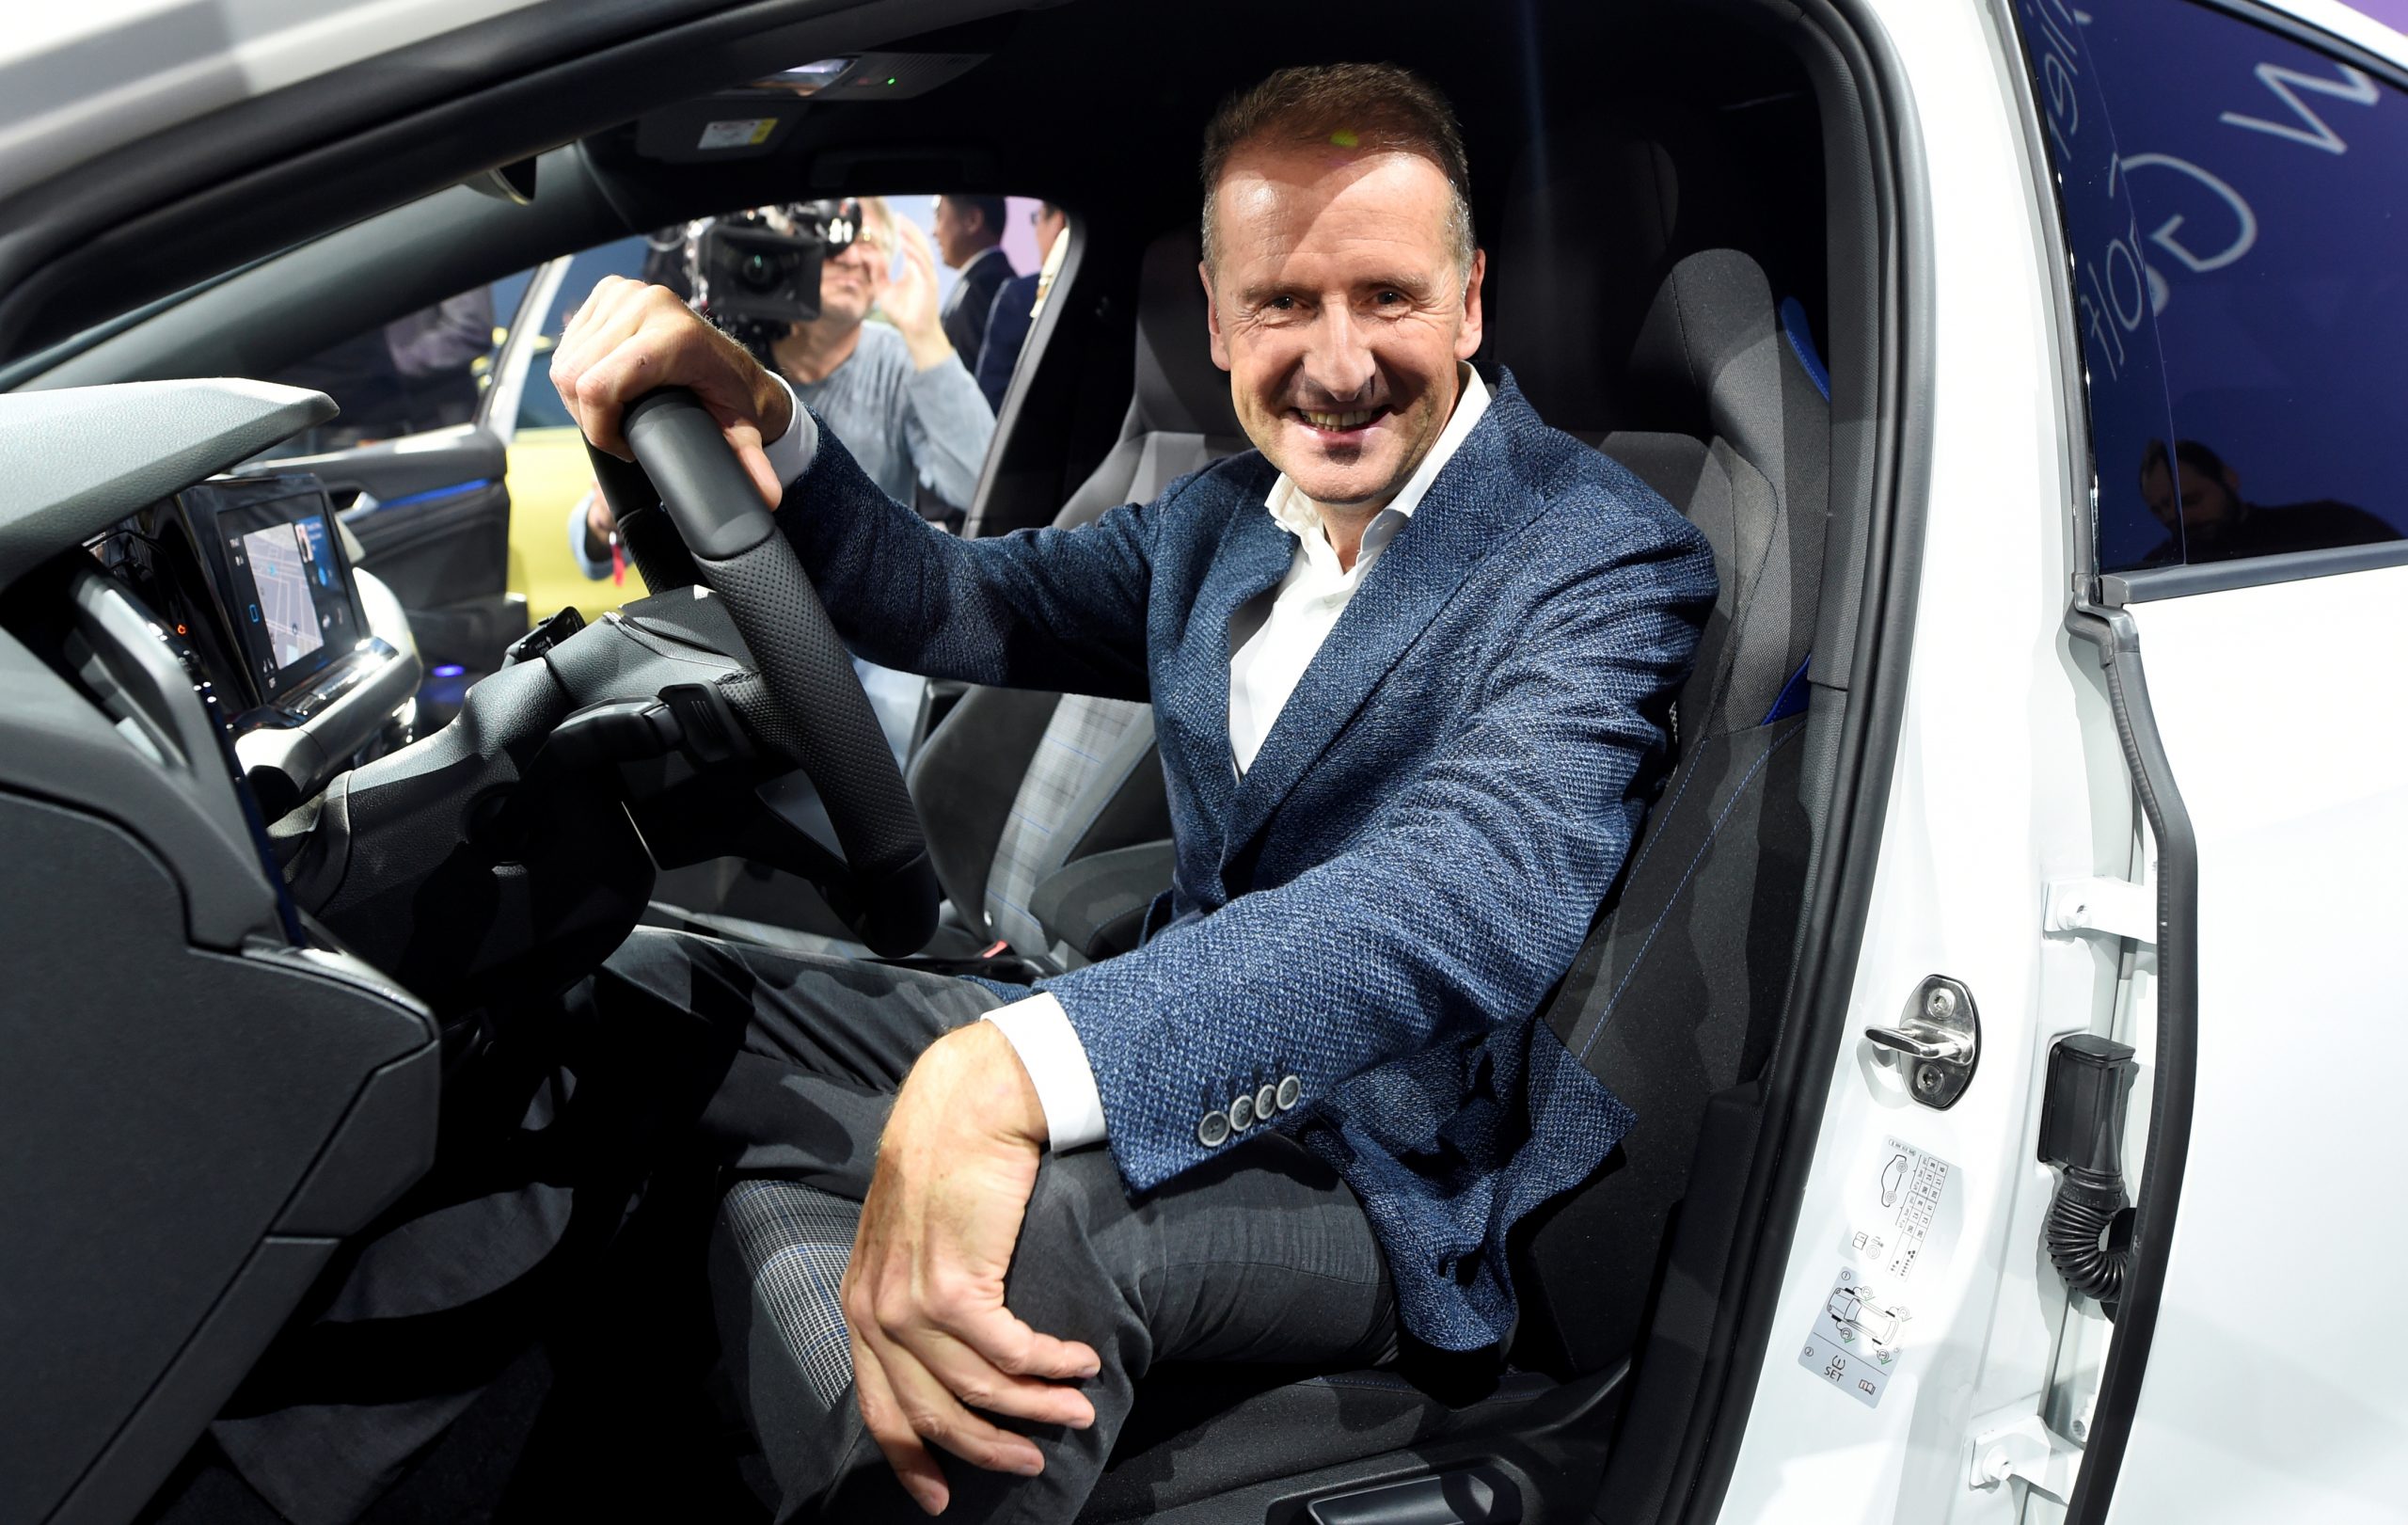 Foto: Volkswagen-topman Herbert Diess presenteerde de nieuwe Golf 8 in oktober 2019. Bron: REUTERS/Fabian Bimmer